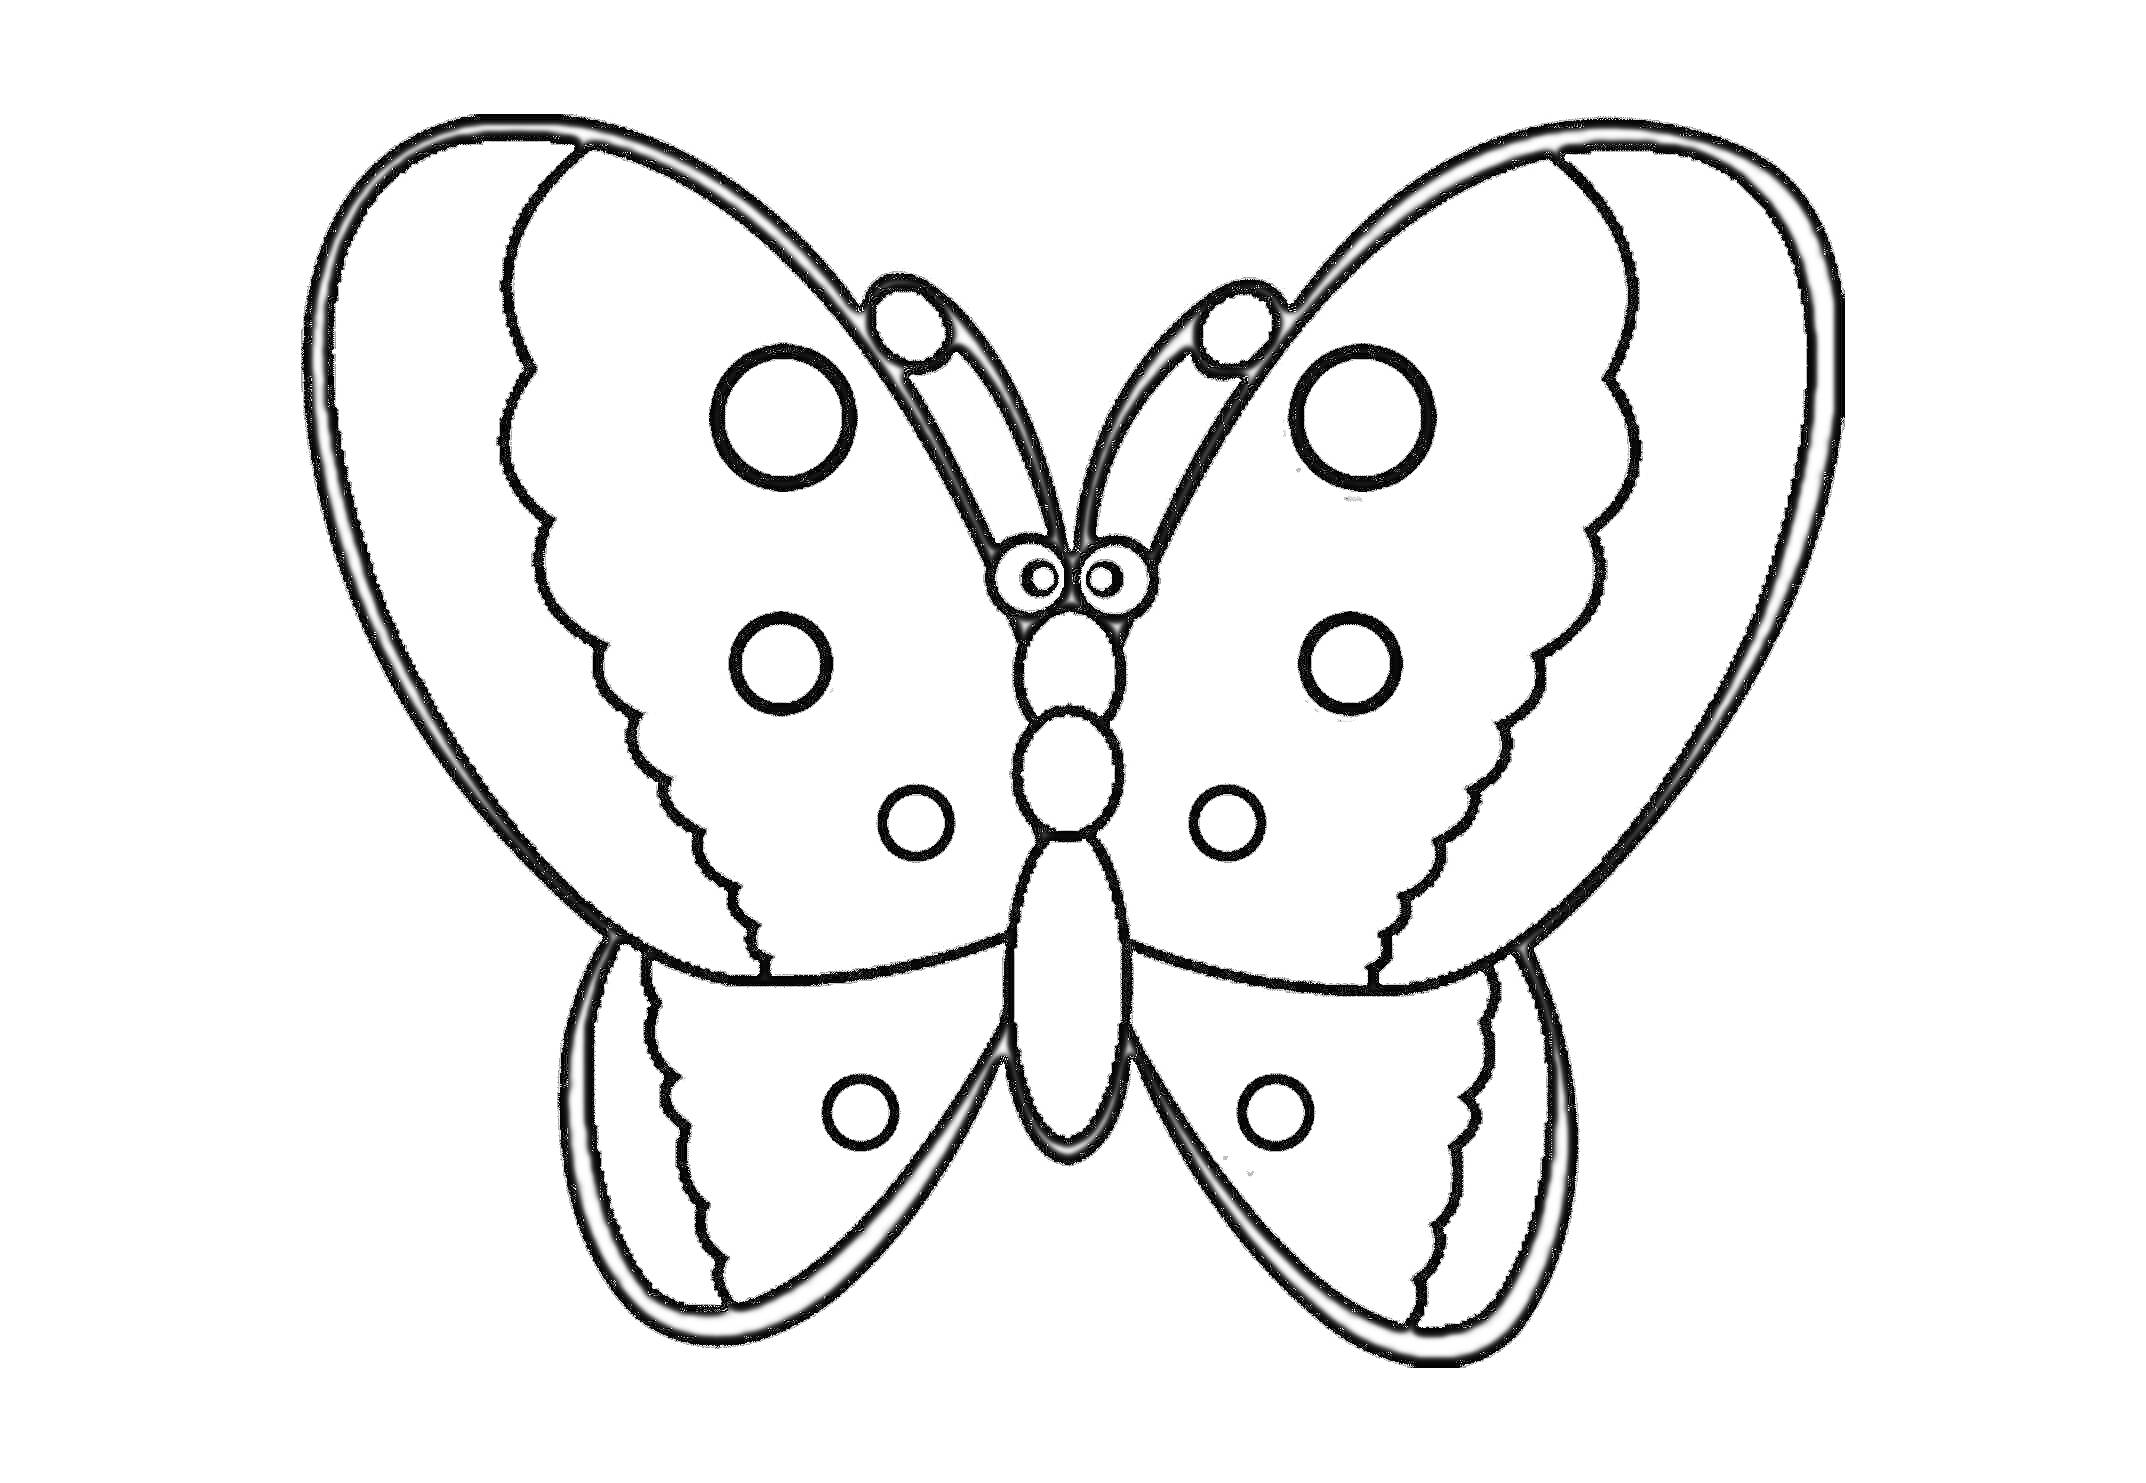 Раскраска Бабочка с узорчатыми крыльями и круглыми пятнами